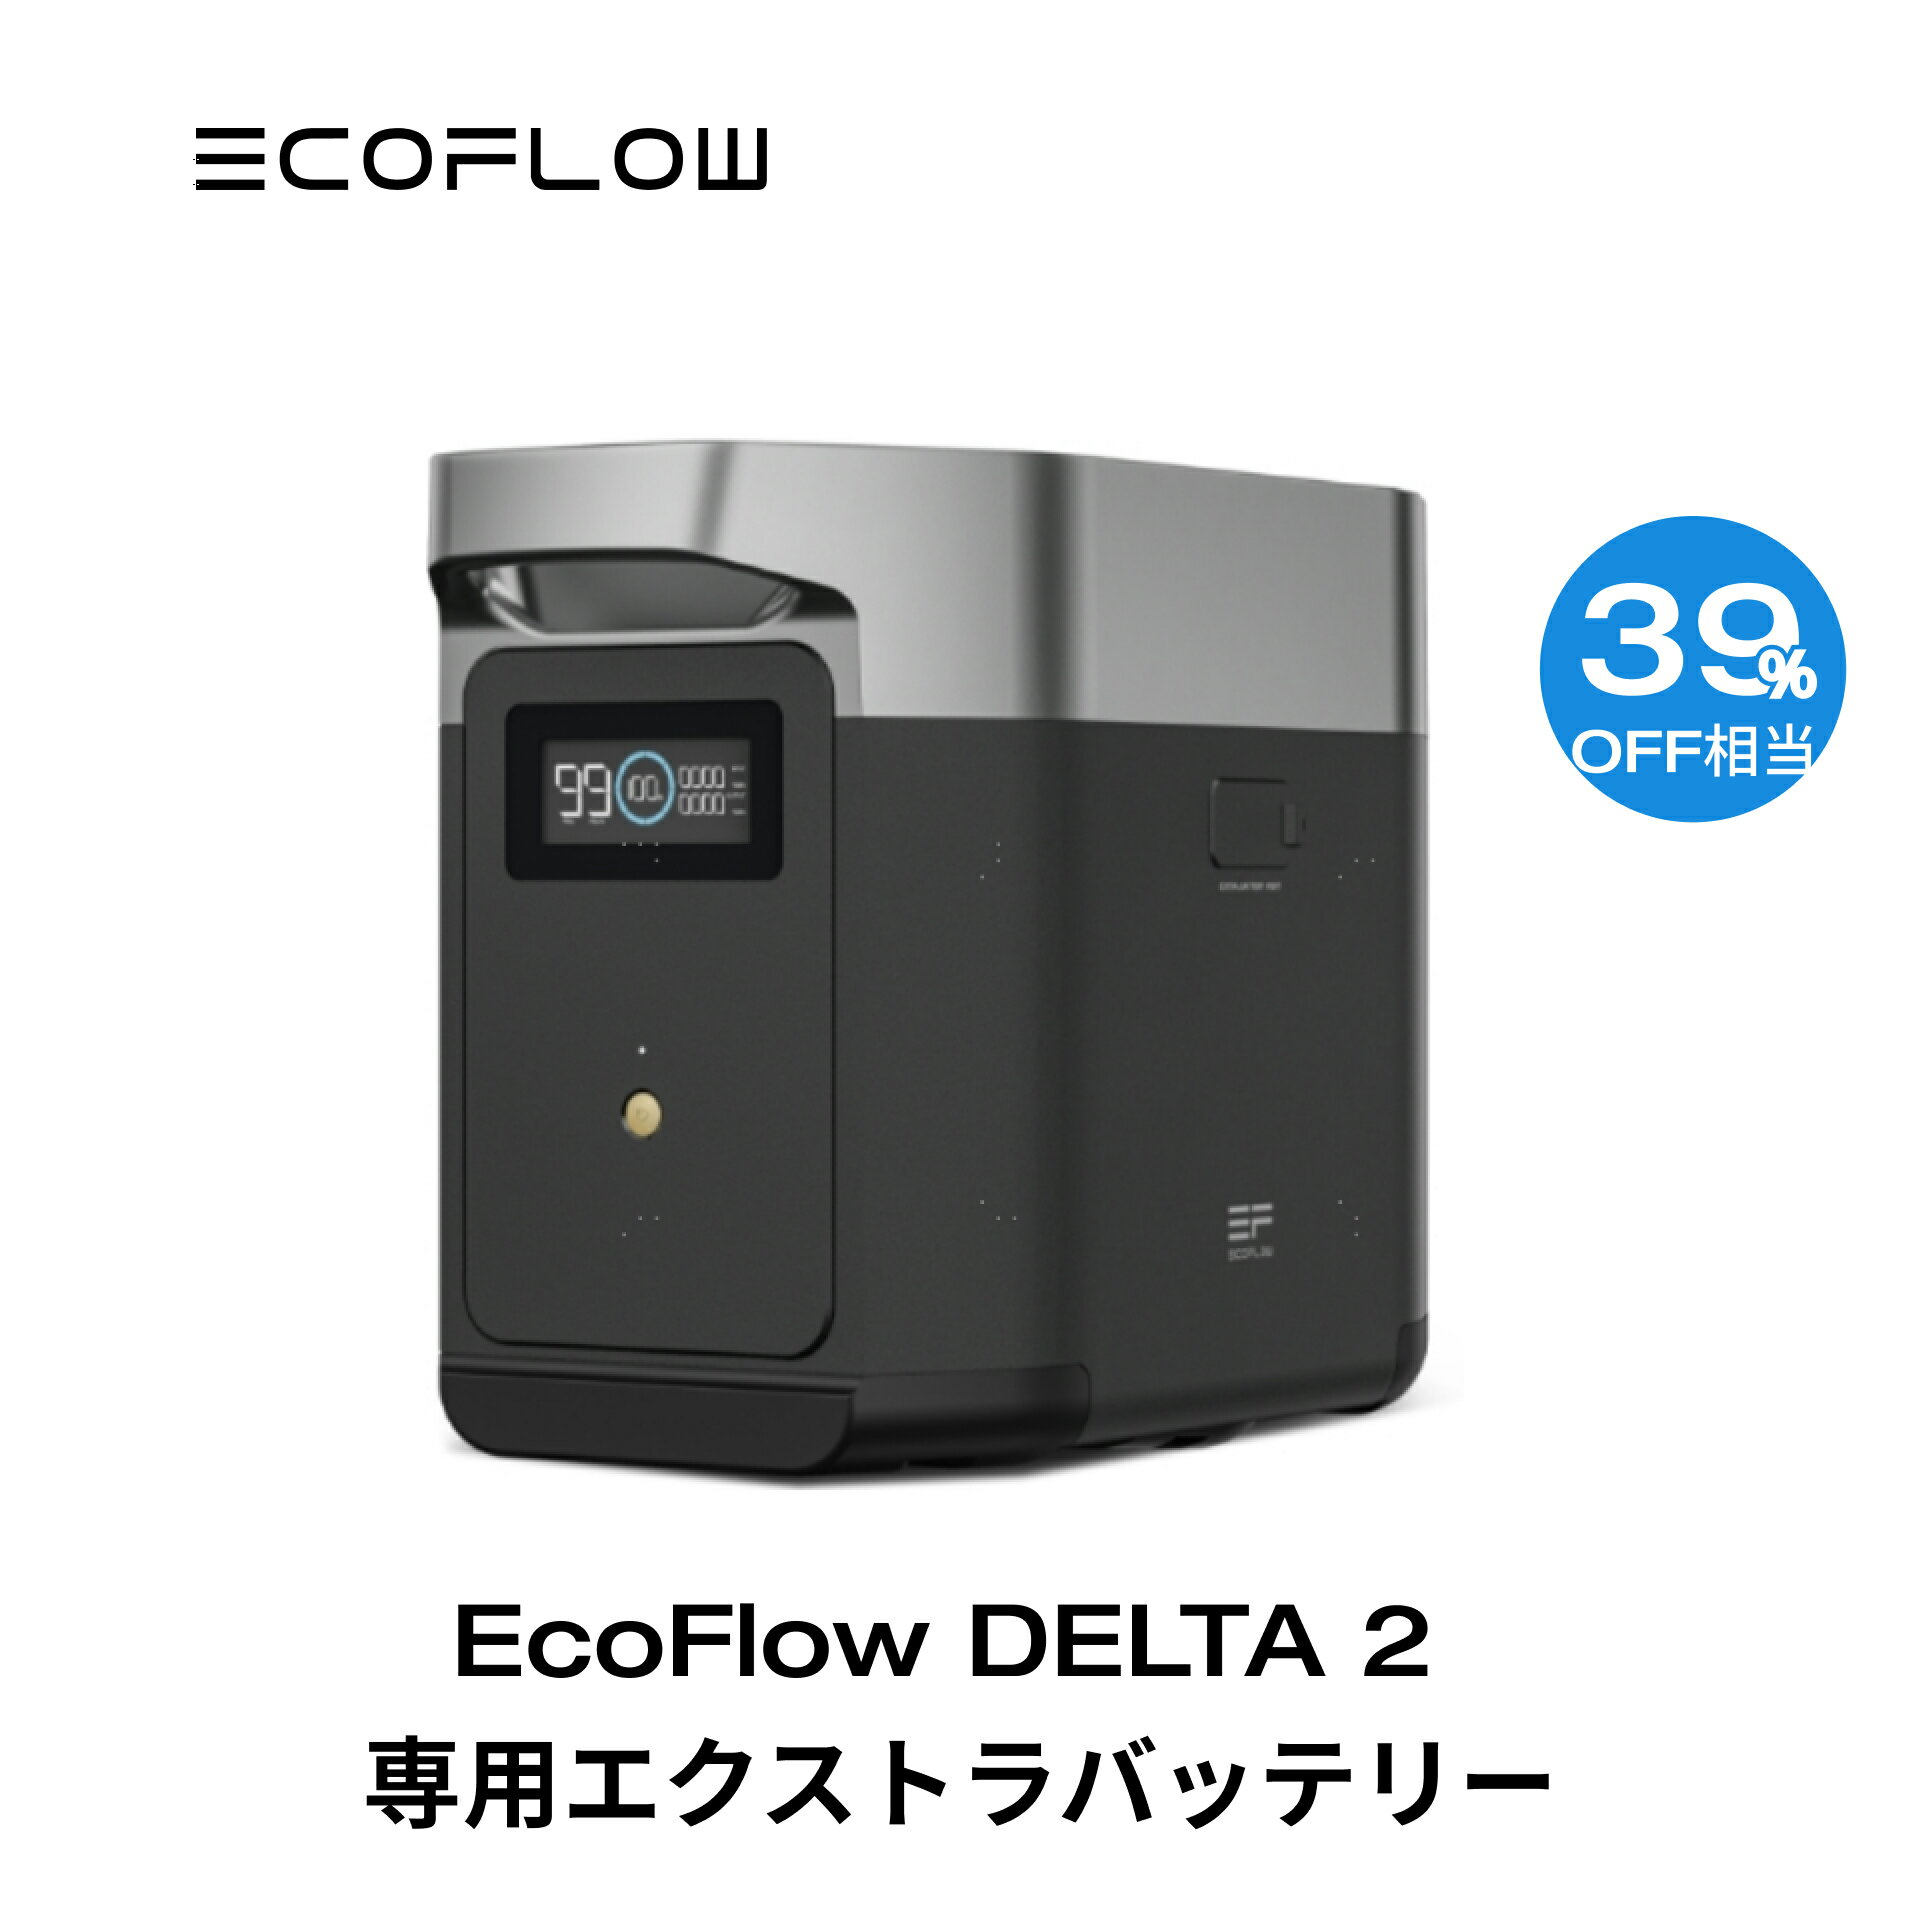 【クーポン併用で66,500円! 6/4 20:00~】EcoFlow DELTA 2専用エクストラバッテリー1024Wh ポータブル電源 アプリ対応…